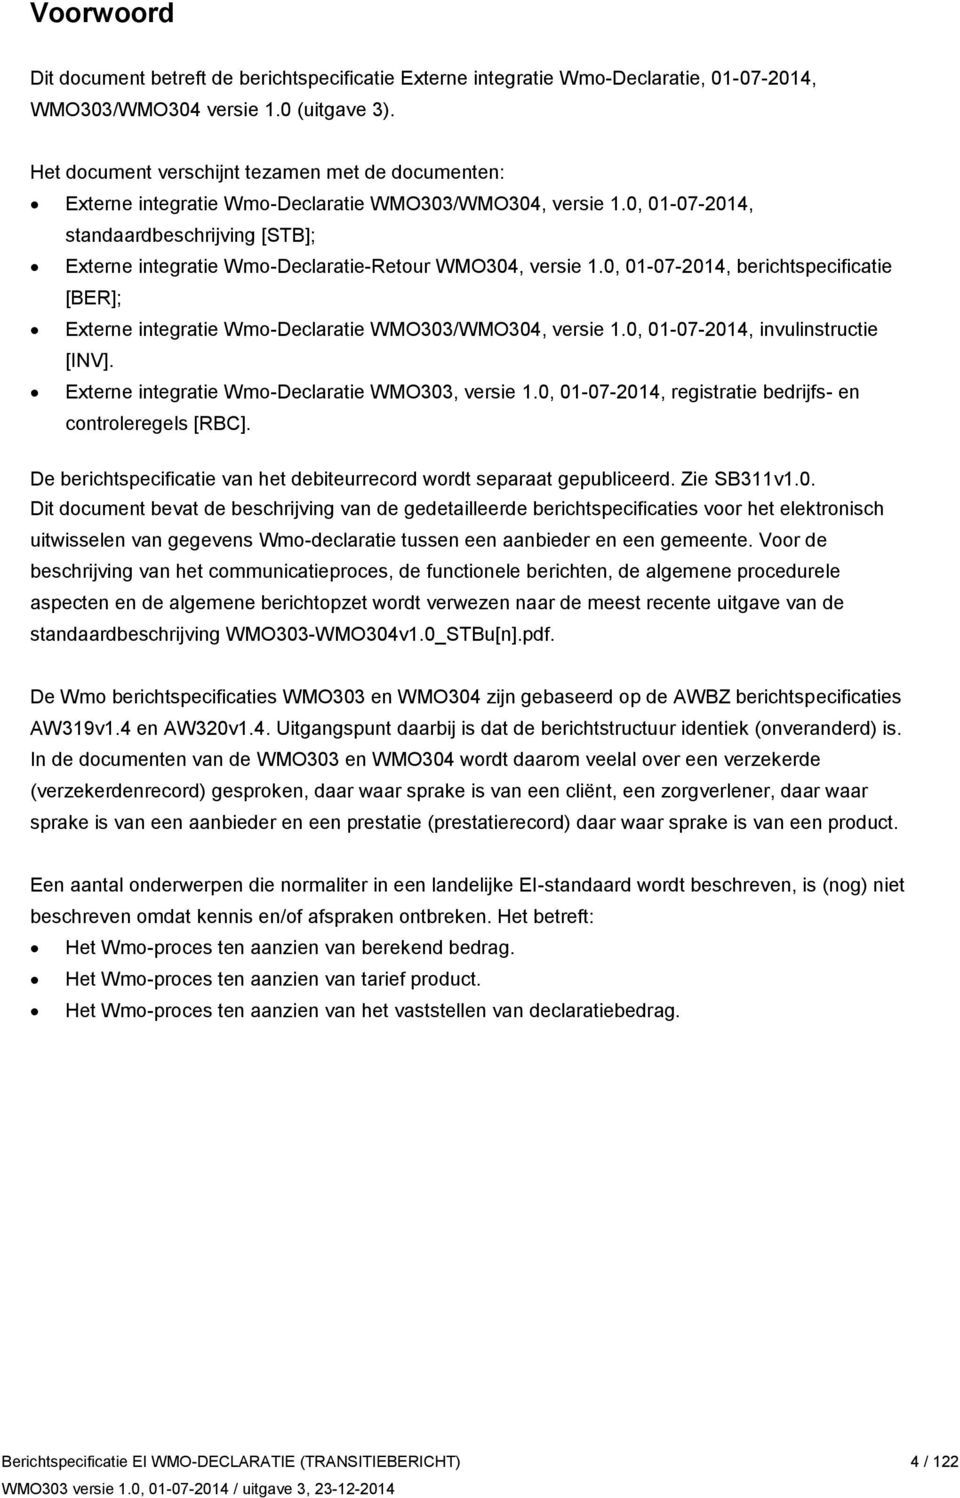 0, 01-07-2014, standaardbeschrijving [STB]; Externe integratie Wmo-Declaratie-Retour WMO304, versie 1.